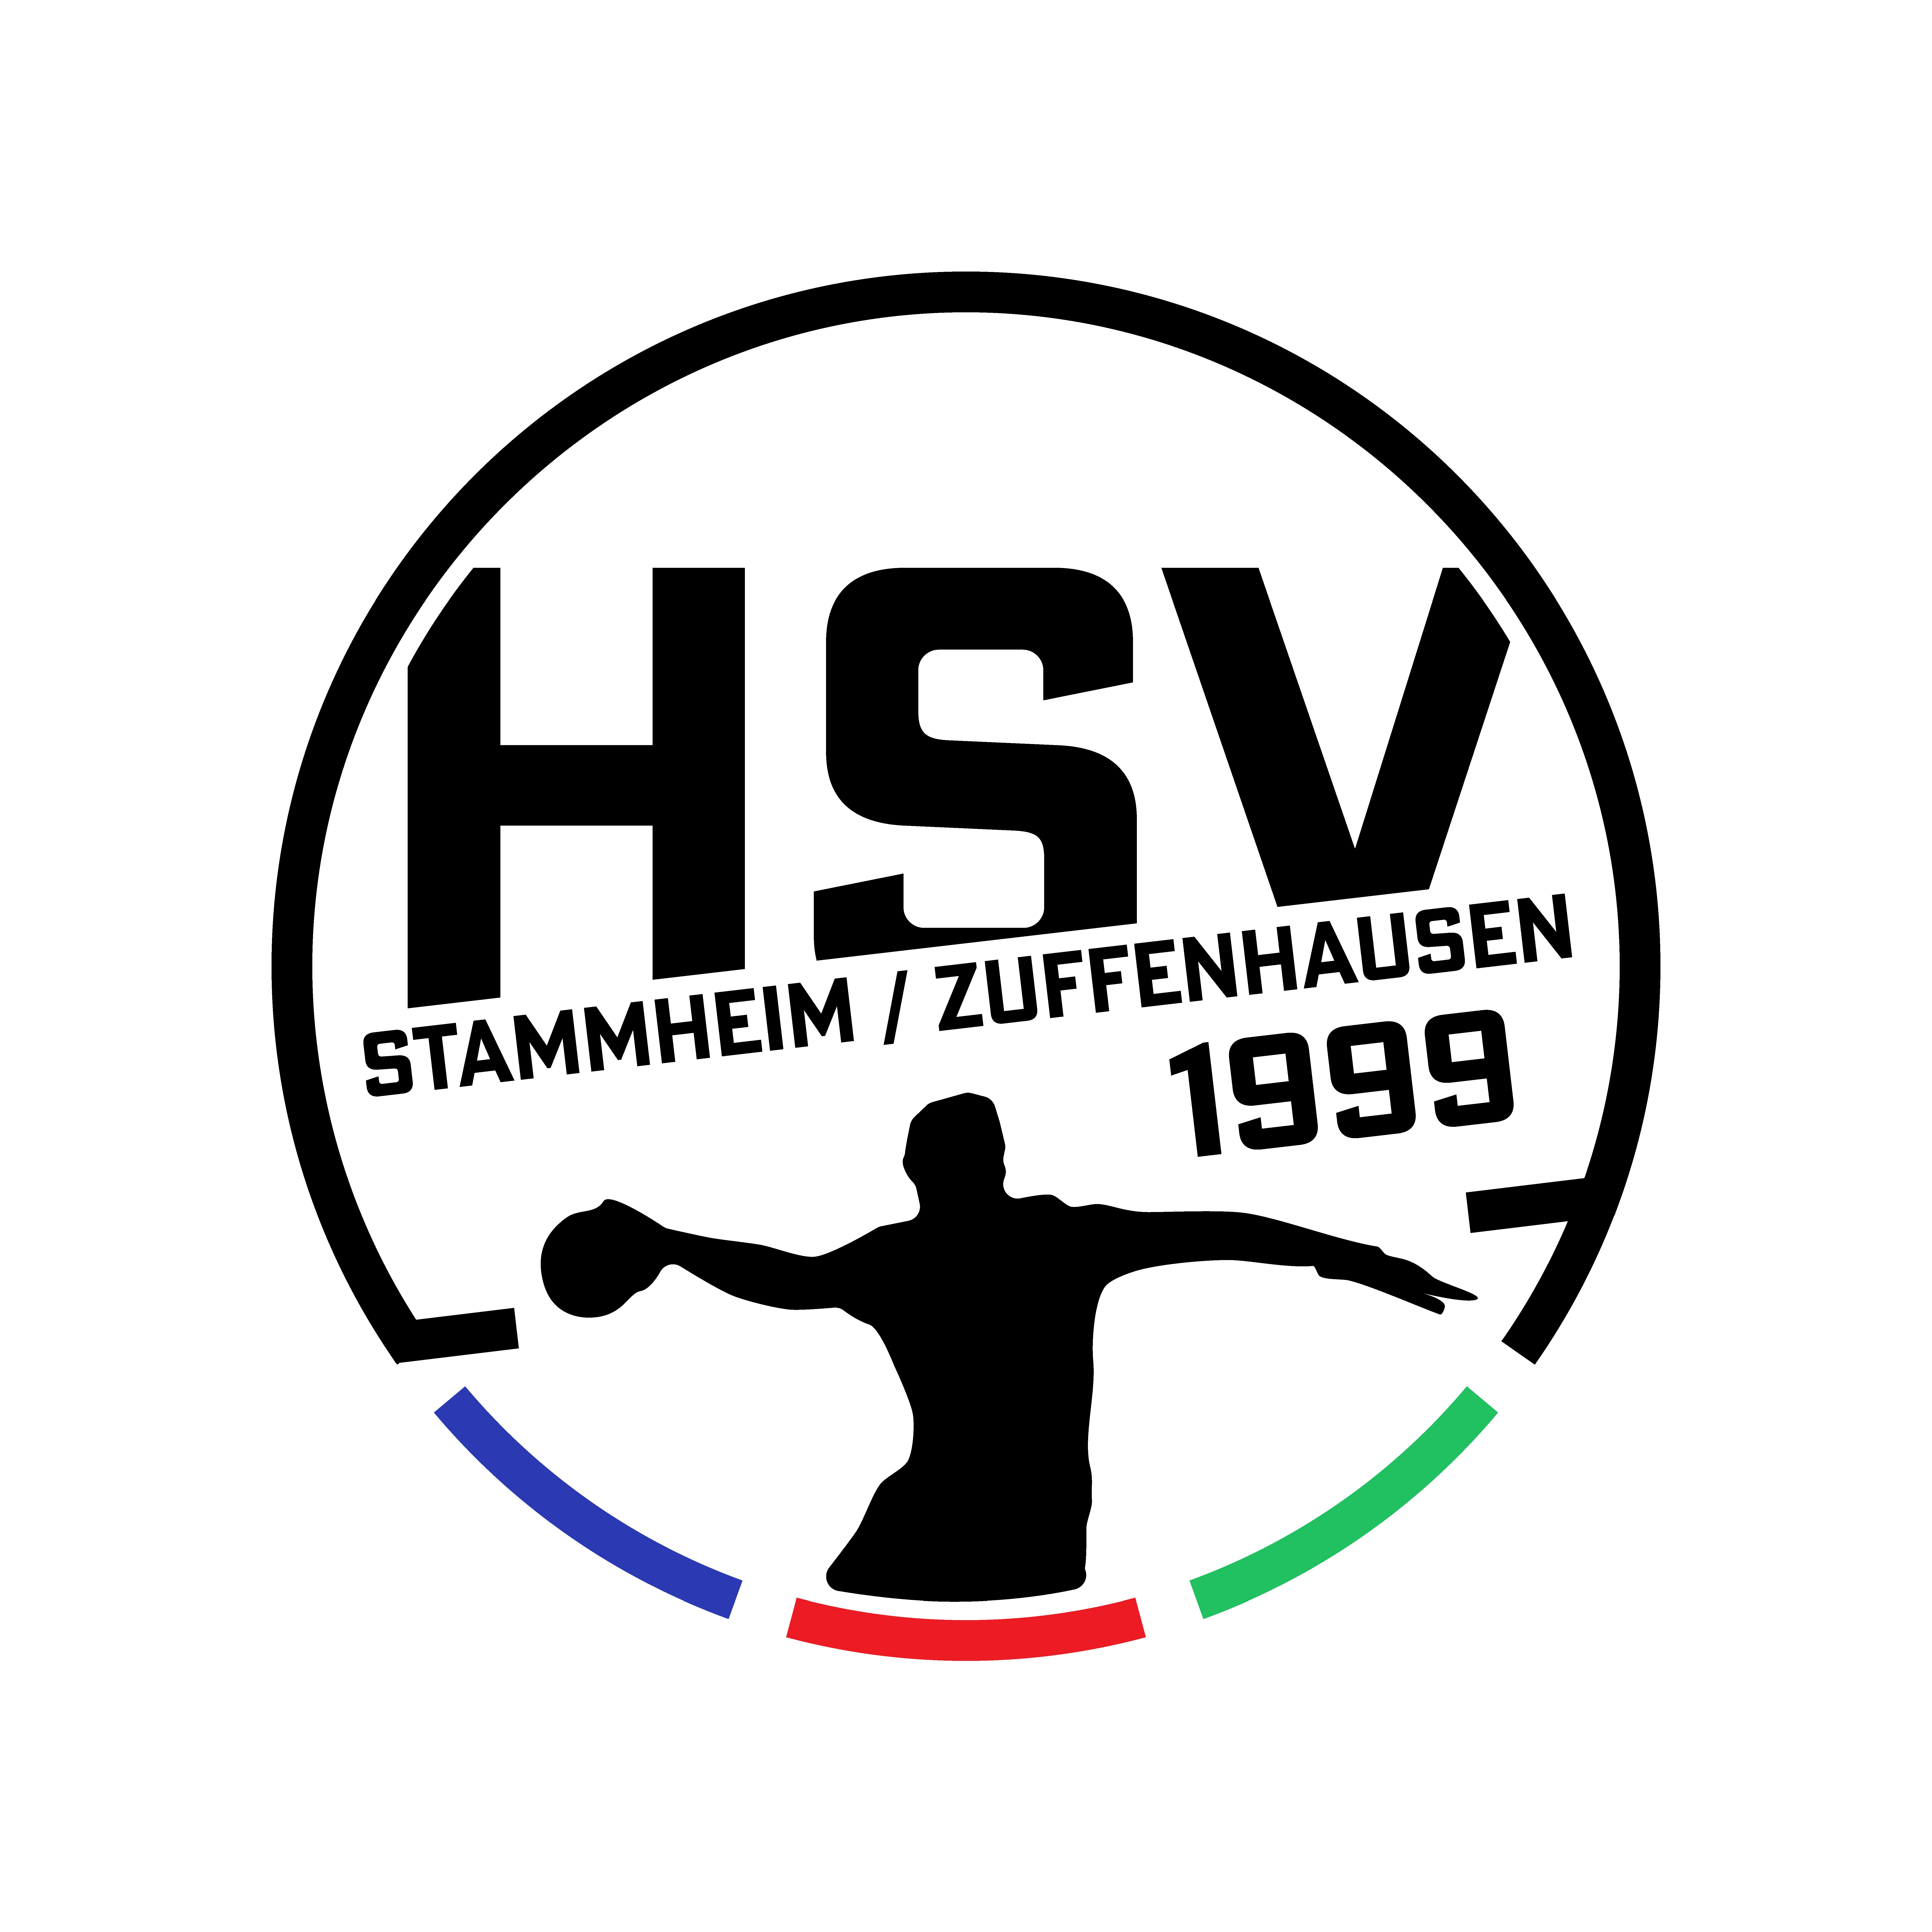 HSV Stammheim/Zuffenhausen 2